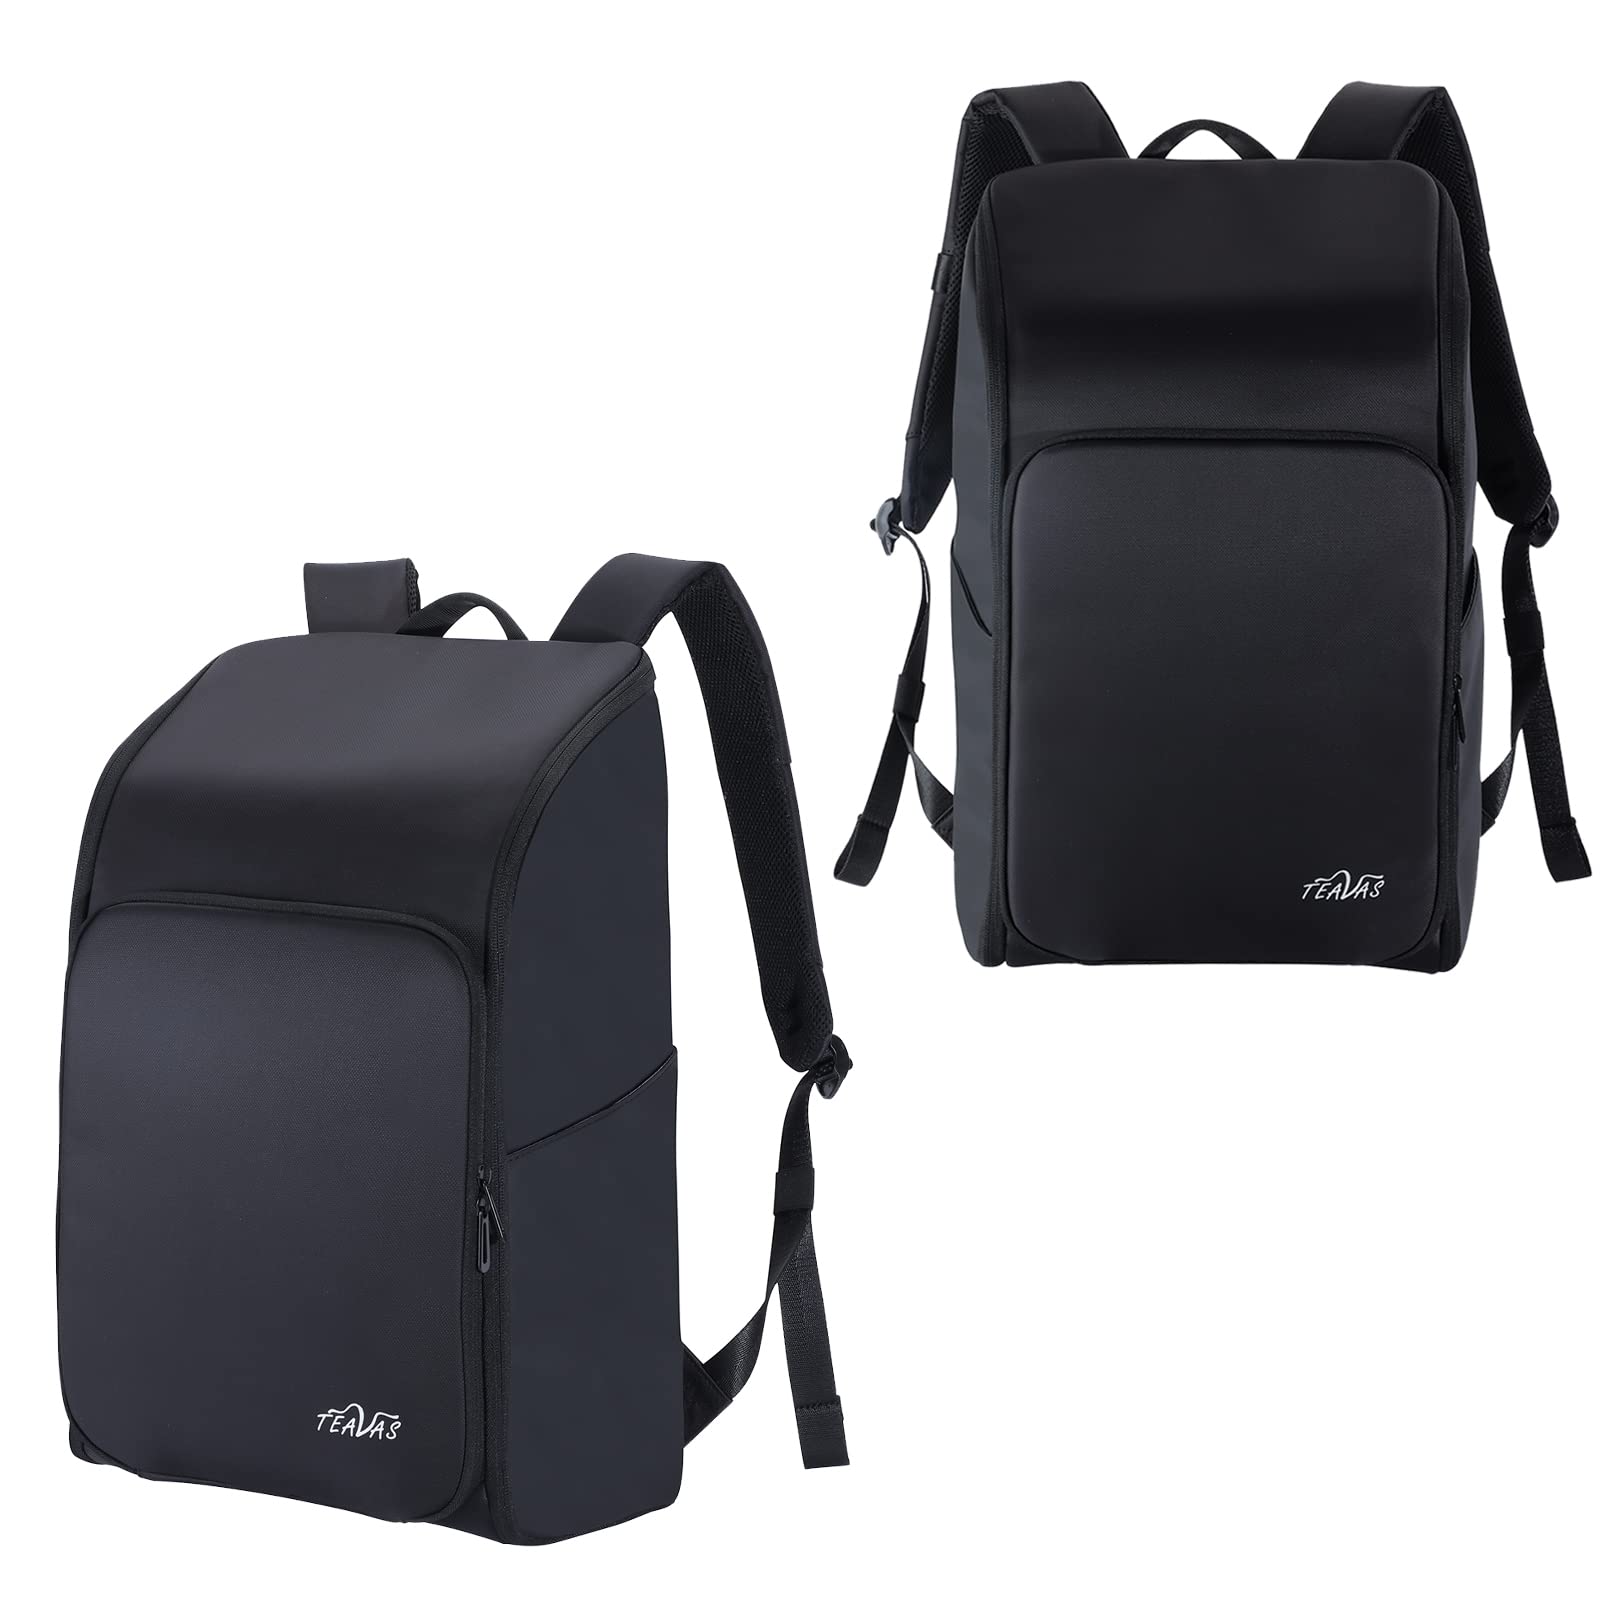 送料無料TEAVAS Large Bartender Bag- 16 Inch Portable Bar Bag Backpack Travel Laptop Backpack Portable Bartending Kit B